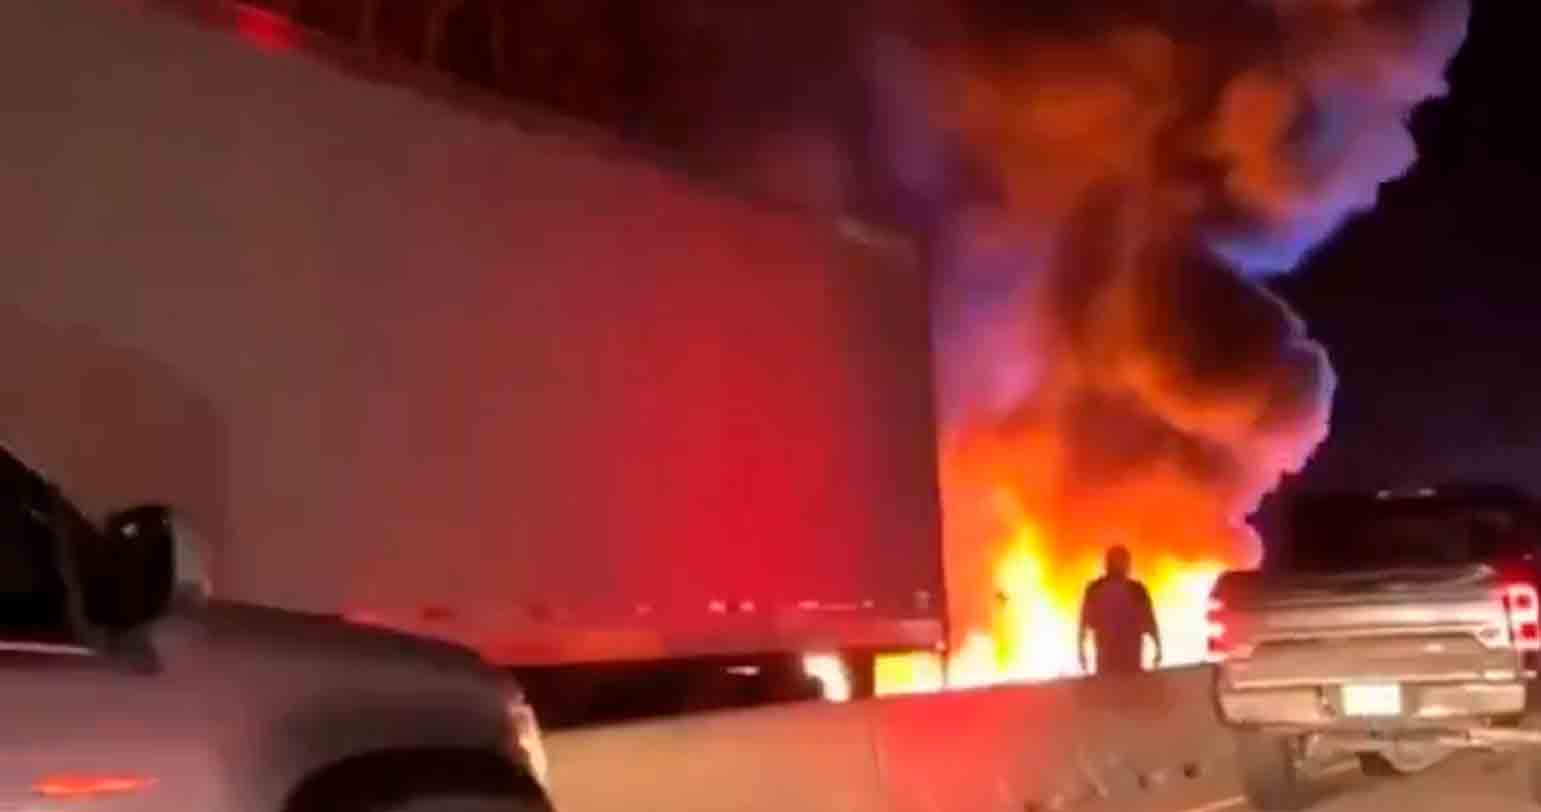 Videó: Repülőgép lezuhan és felrobban észak-karolinai autópályán, 2-en súlyos sérülésekkel megmenekülnek. Videó és fotók: Twitter reprodukció @tworldreviews / @vanhoa2272